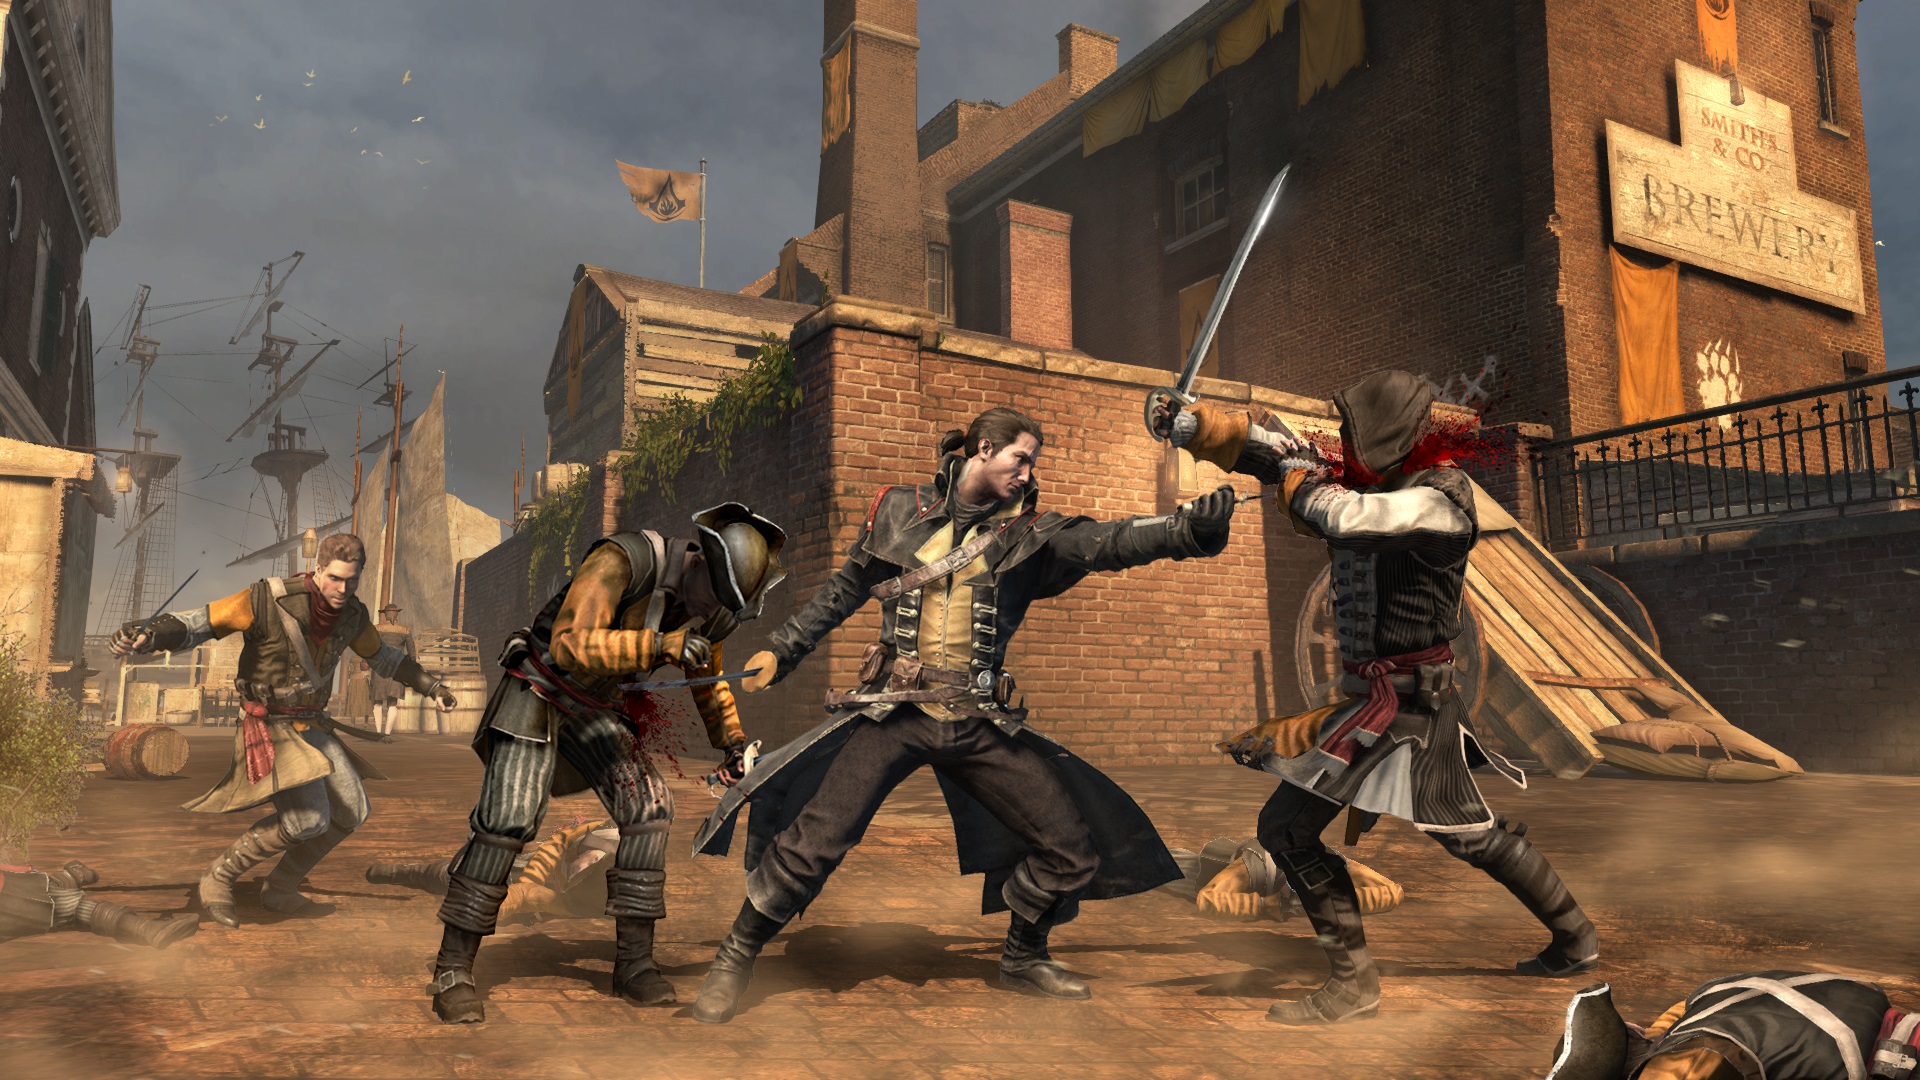 Assassin's Creed: Rogue Protivnkmi s tentoraz vai bval druhovia. Boj proti presile nie je problmom, toia frovo a po jednom.